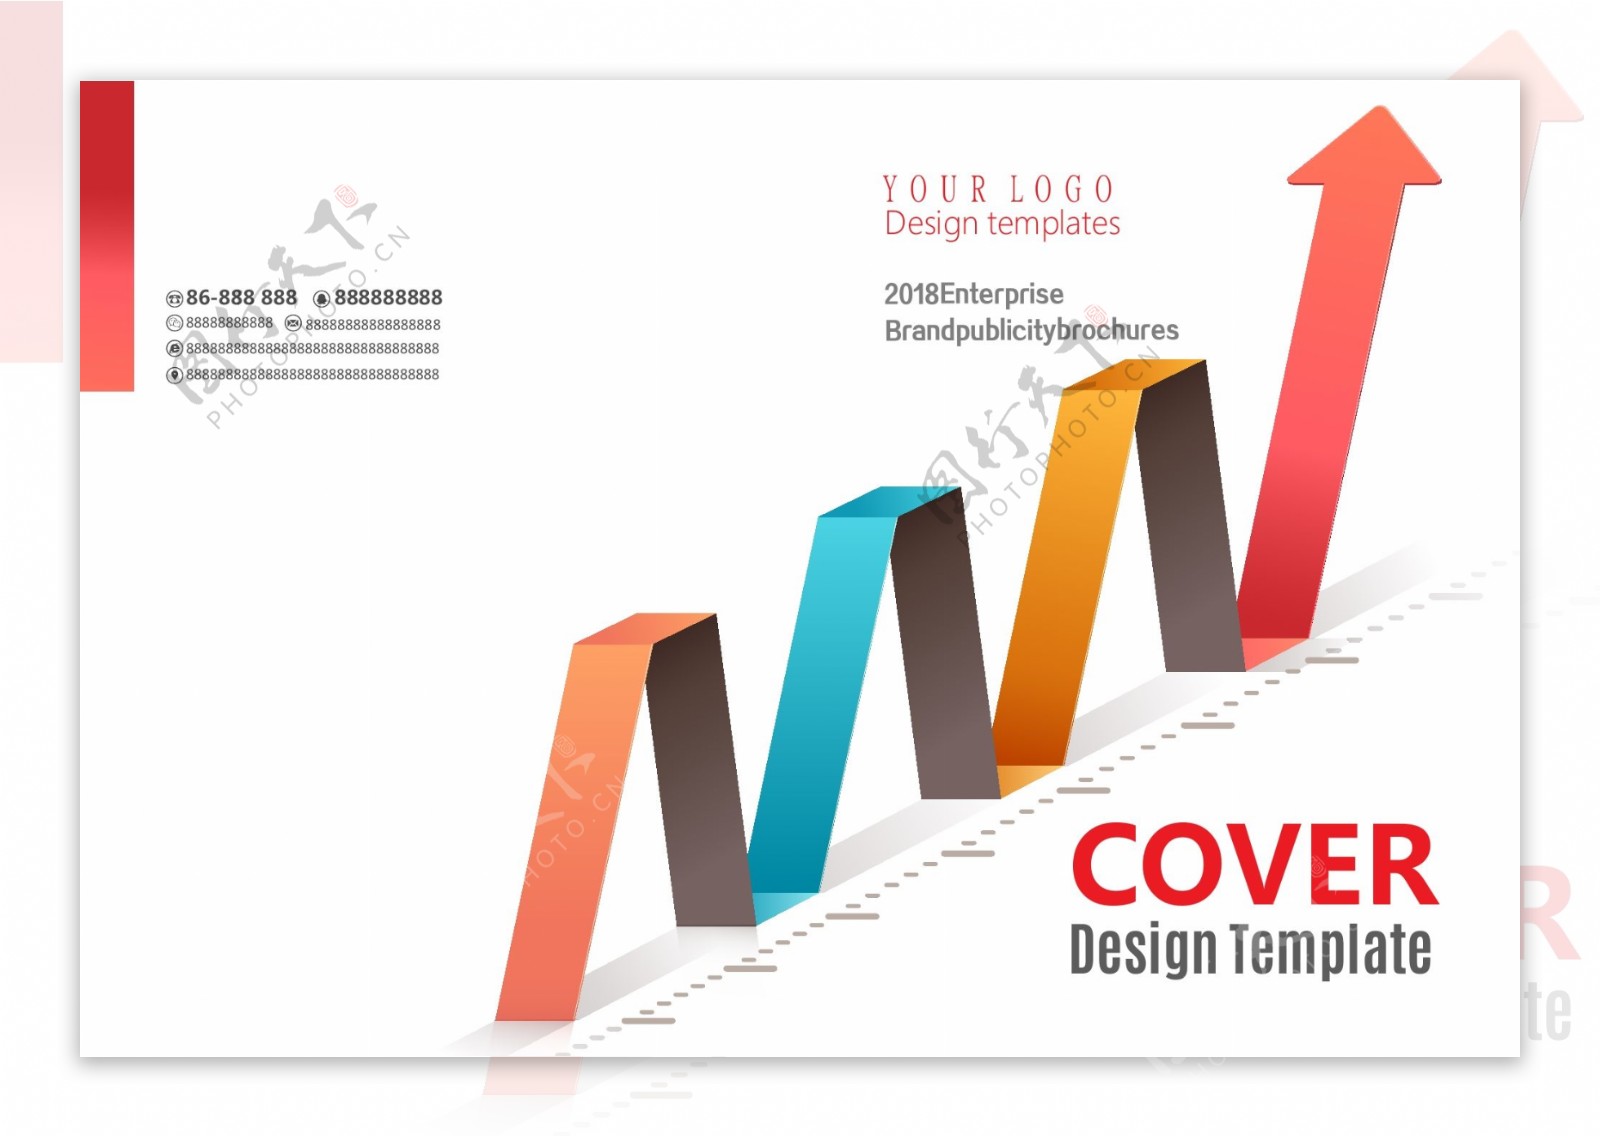 大气企业形象画册设计企业宣传册封面设计